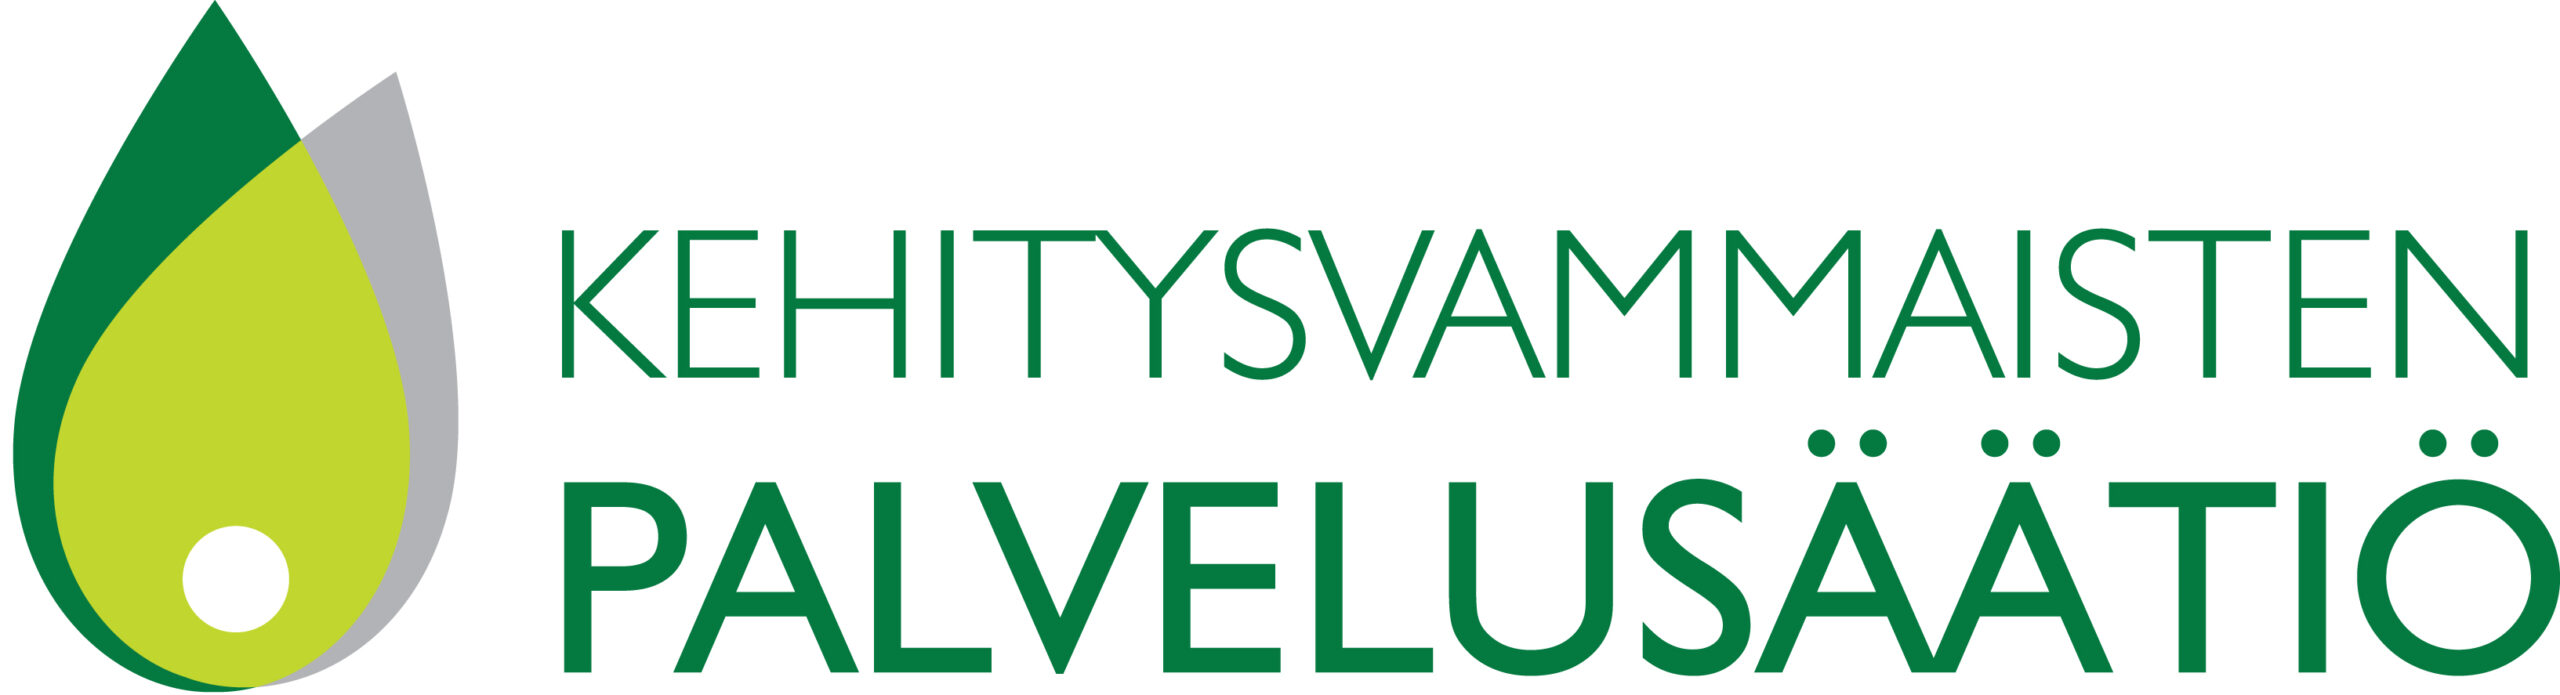 Kehitysvammaisten palvelusäätiön logo, teksti ja pelkistetty kuva vihreän sävyissä